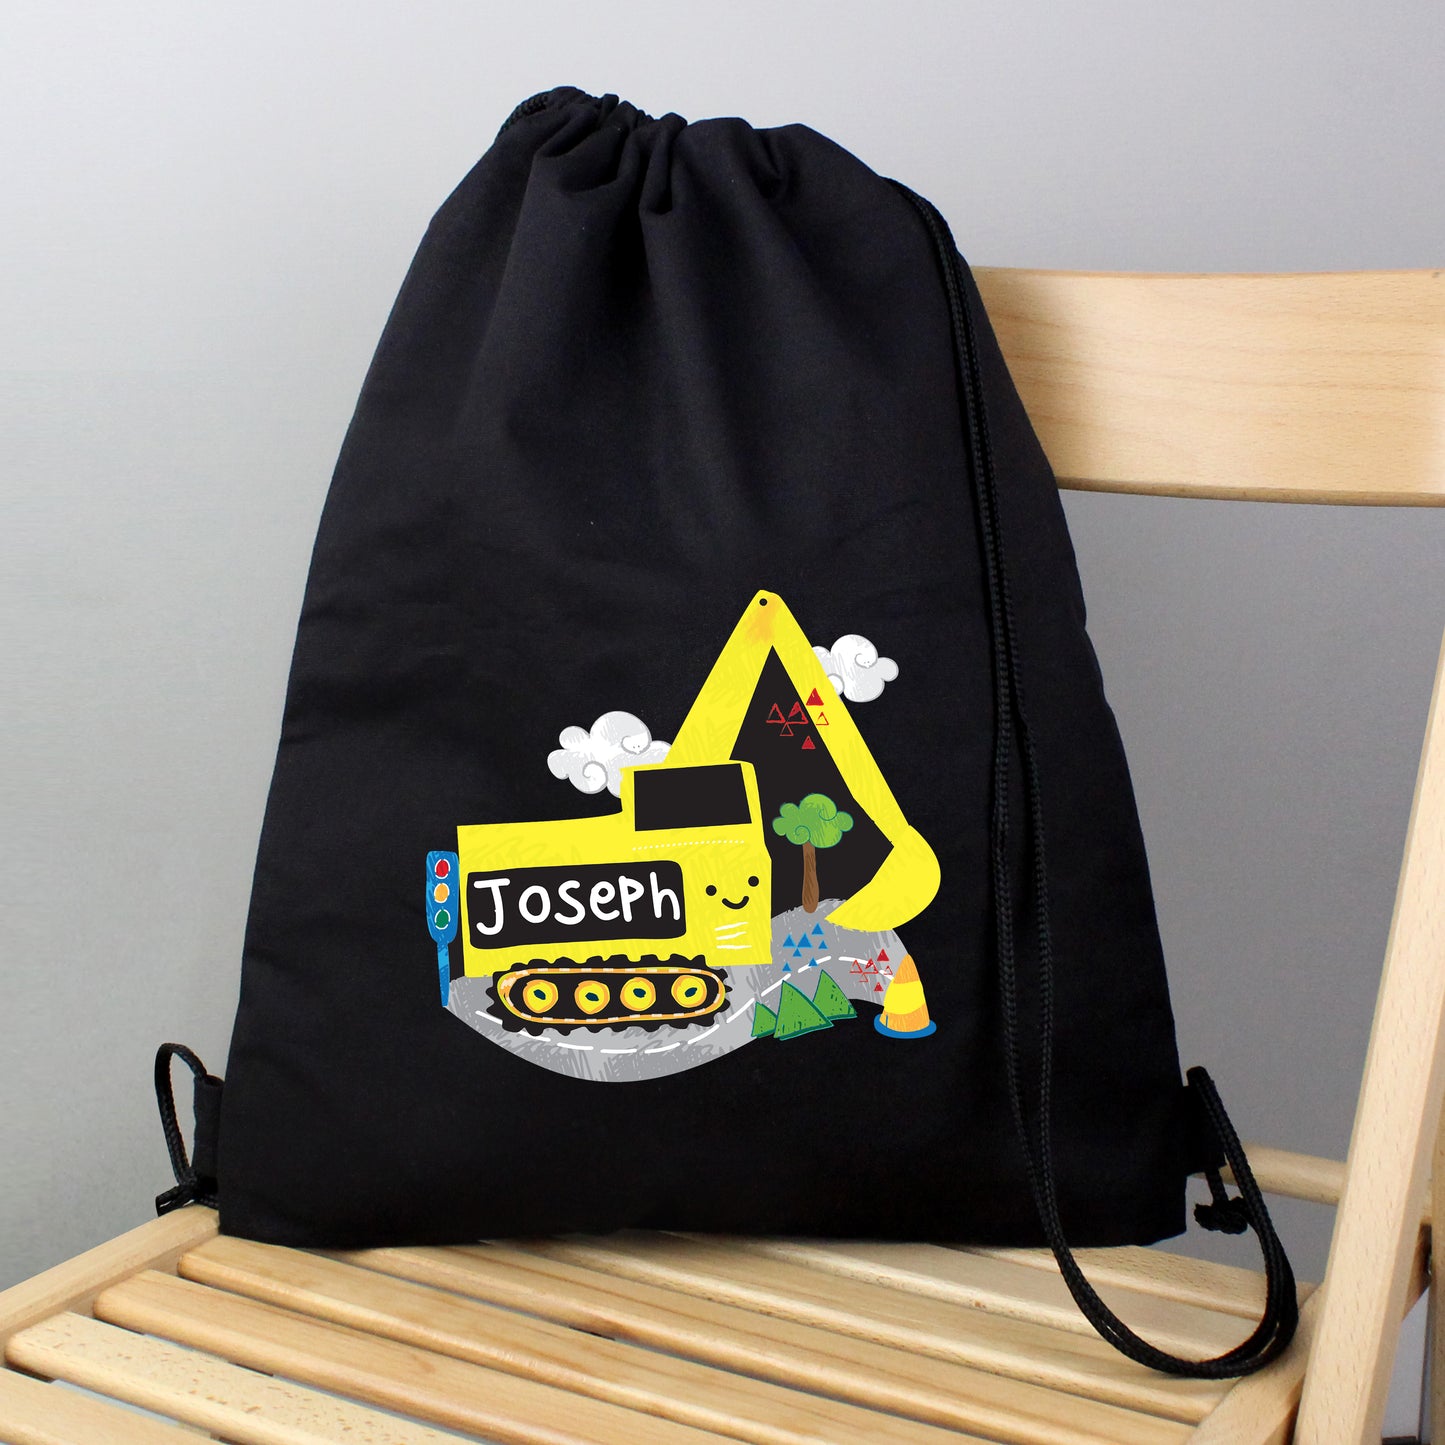 Personalised Digger Black Swim & Kit Bag - Personalise It!